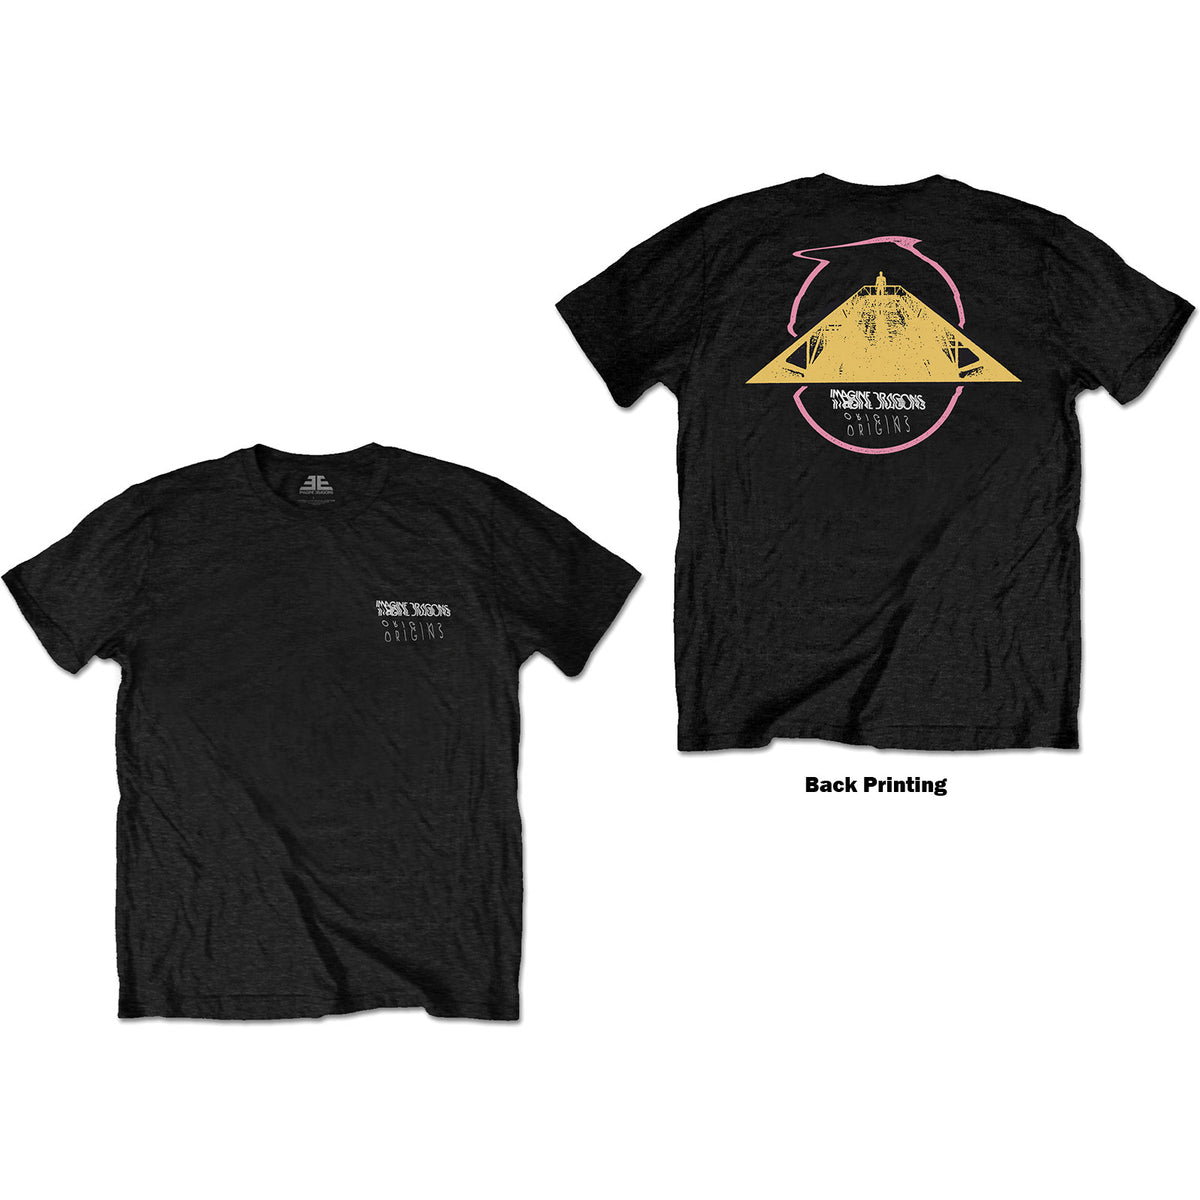 Imagine Dragons T-Shirt – Dreieckslogo (Rückendruck) – Schwarz, Unisex, offiziell lizenziertes Design